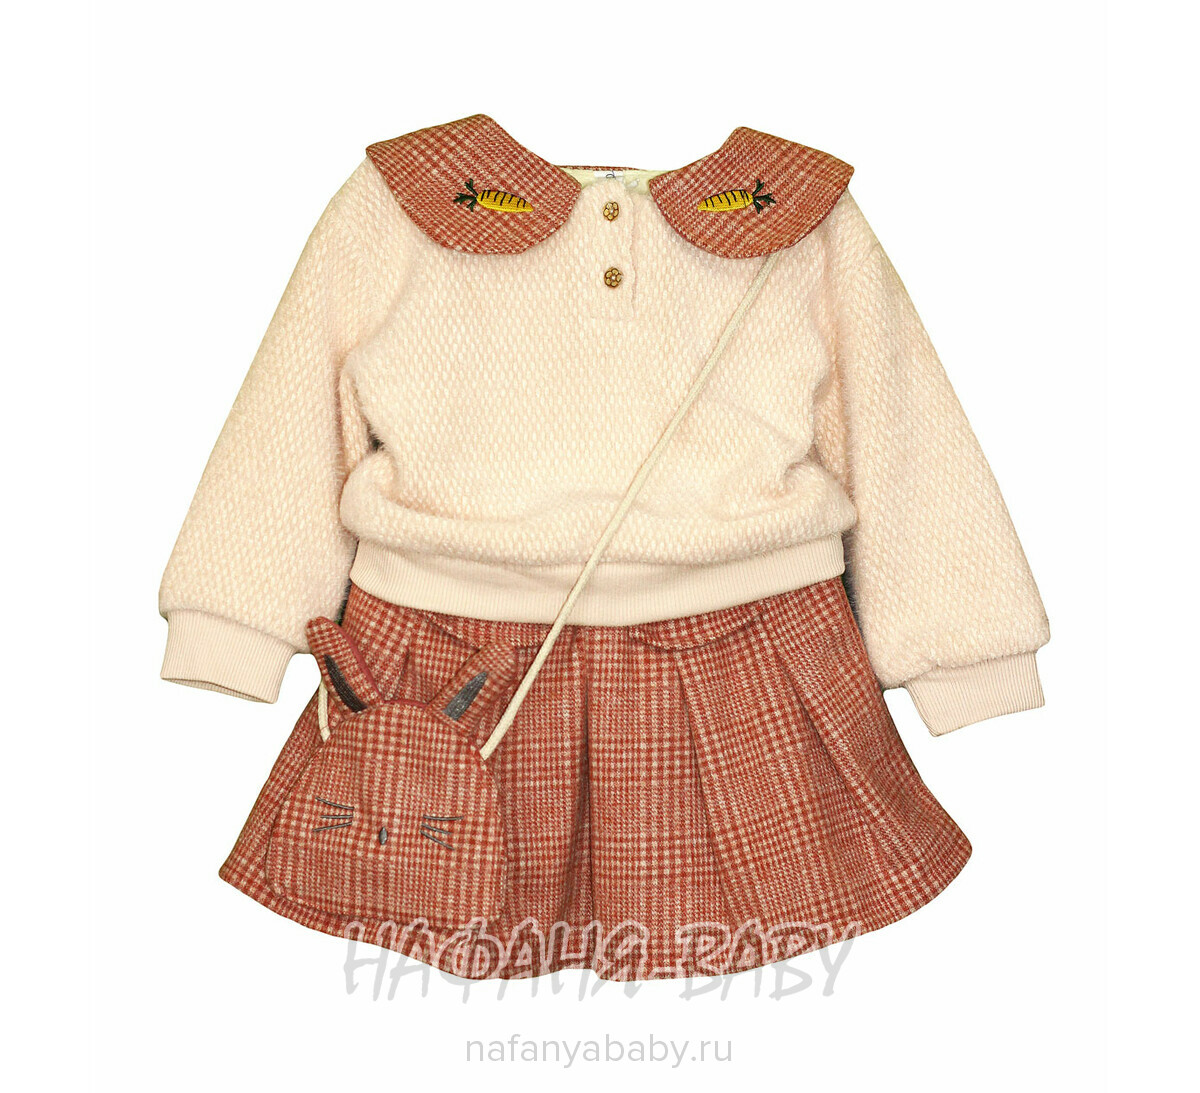 Детский костюм для девочки MYY, купить в интернет магазине Нафаня. арт: 1055.